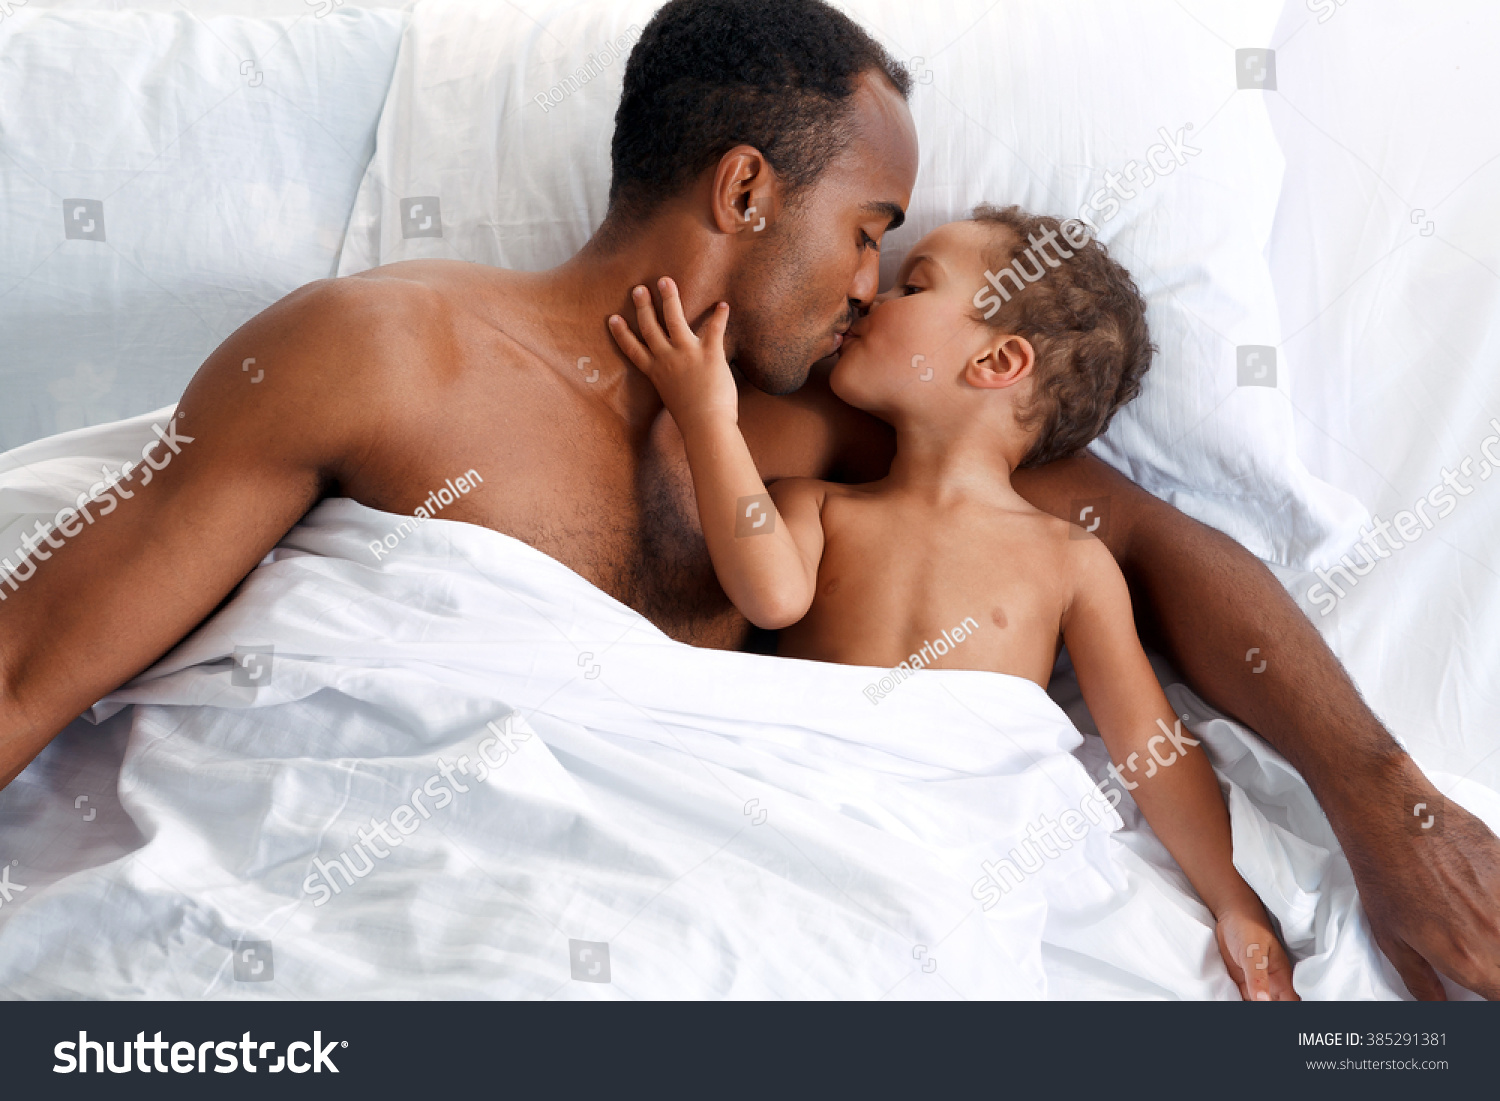 дочь смотрит за голым спящим отцом фото 87